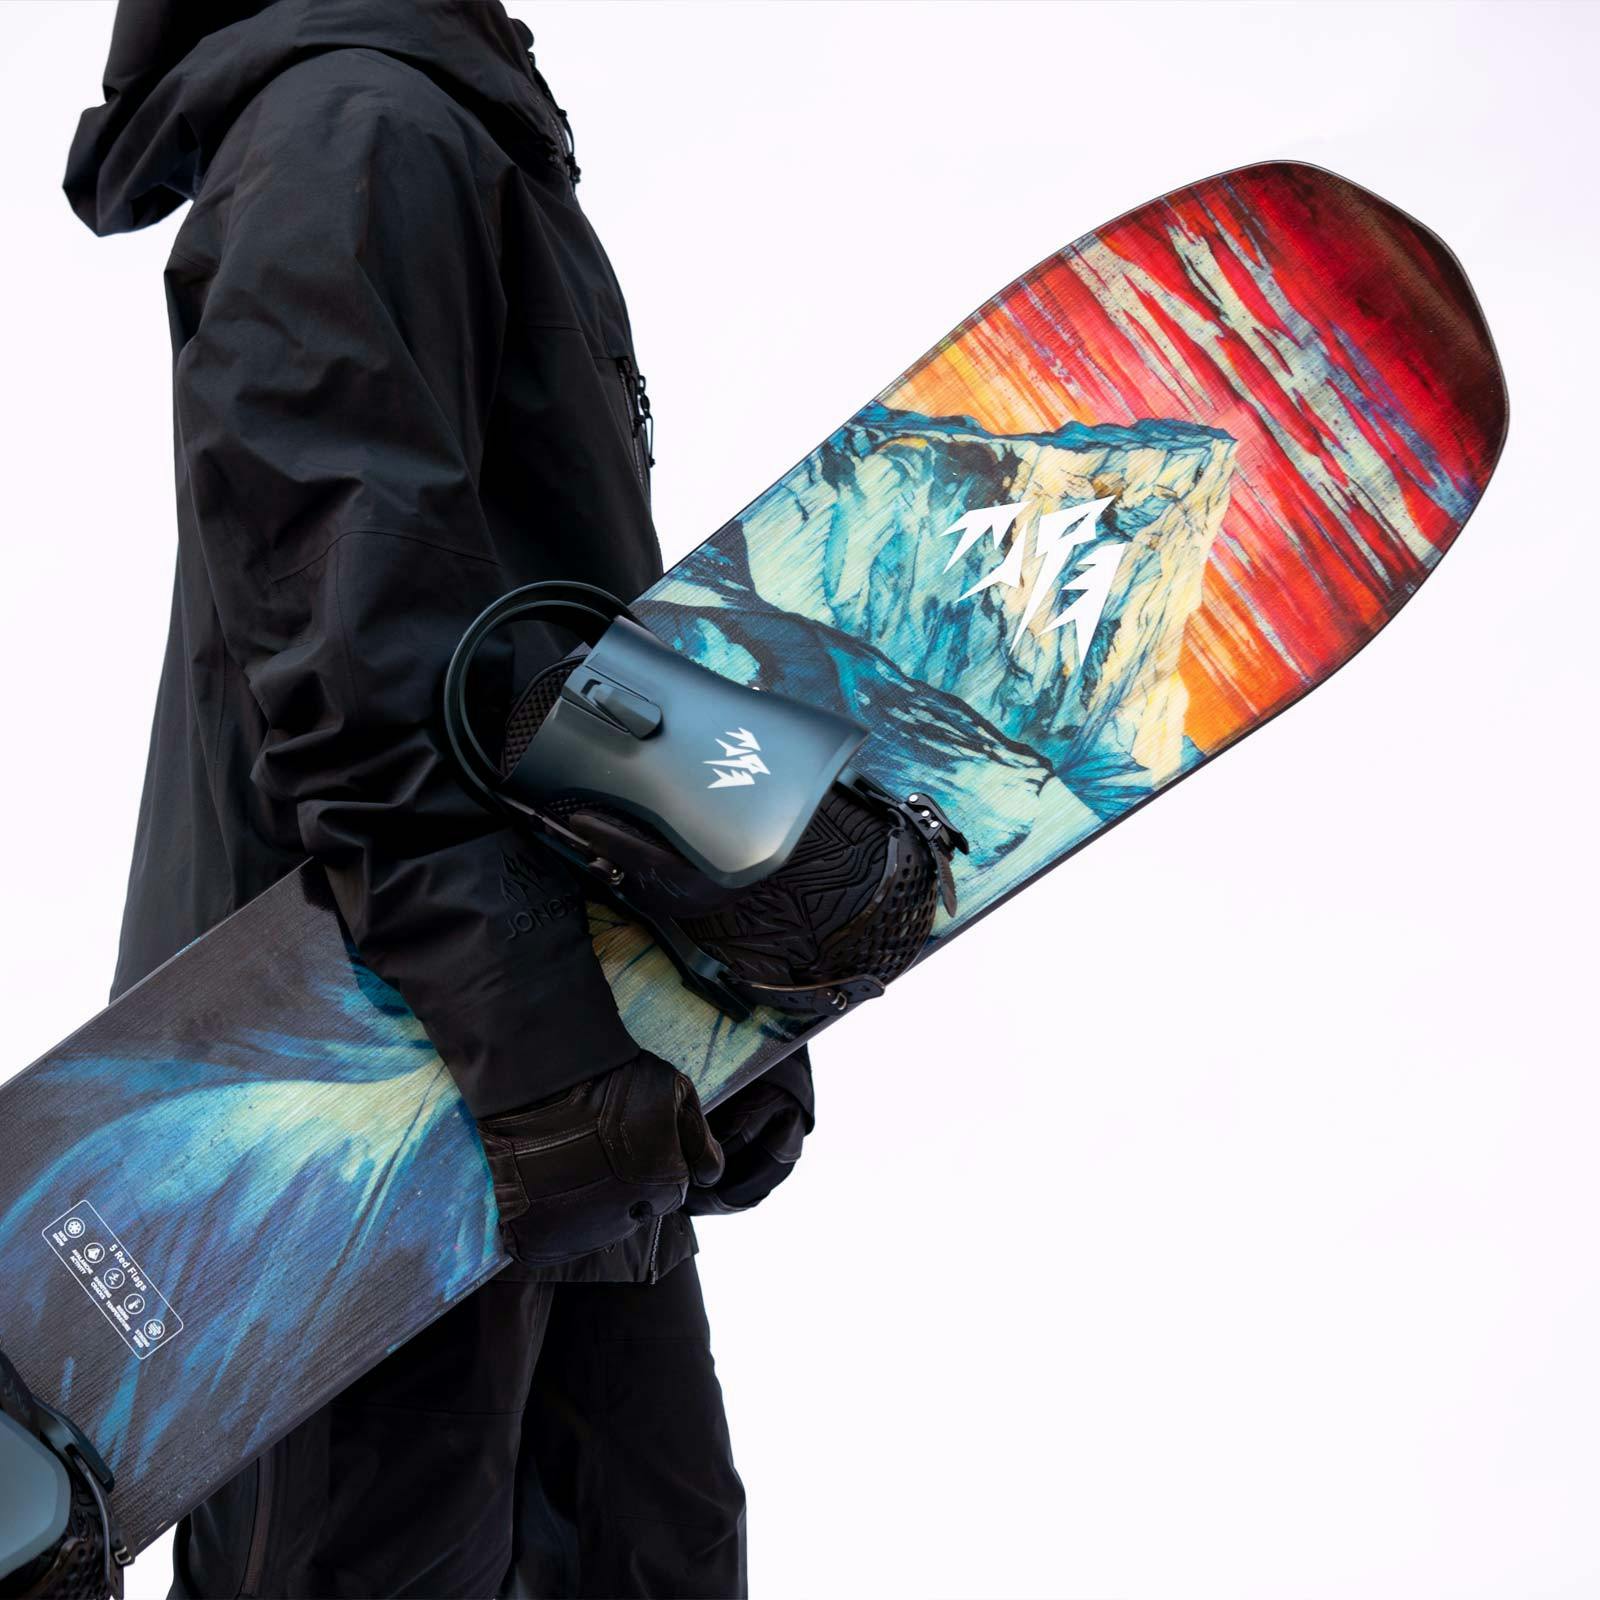 Jones Frontier Snowboard · 2022